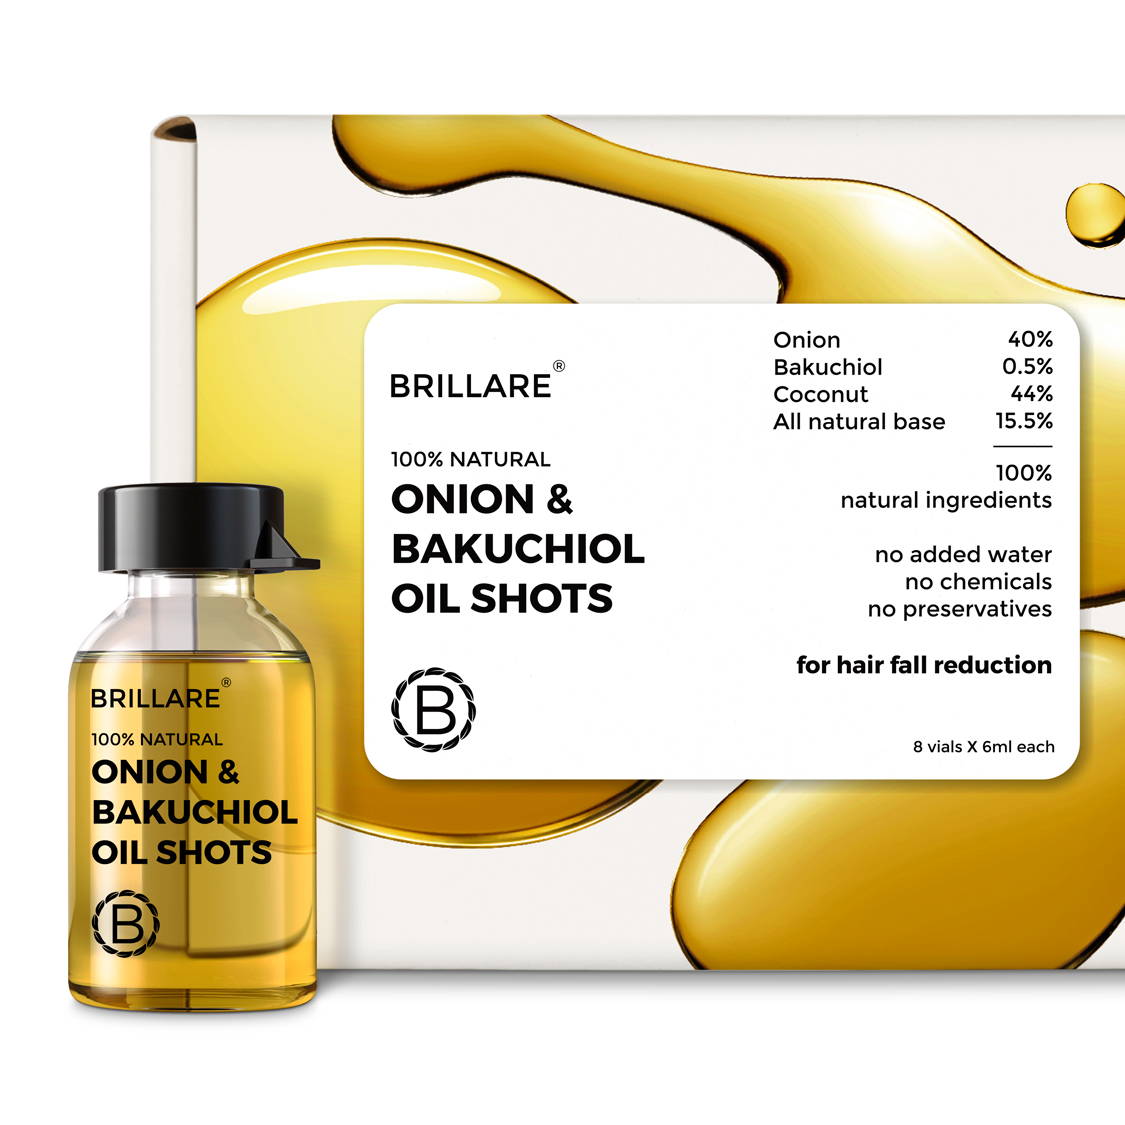 Onion & Bakuchiol Oil Shots for hair fall reduction | Brillare